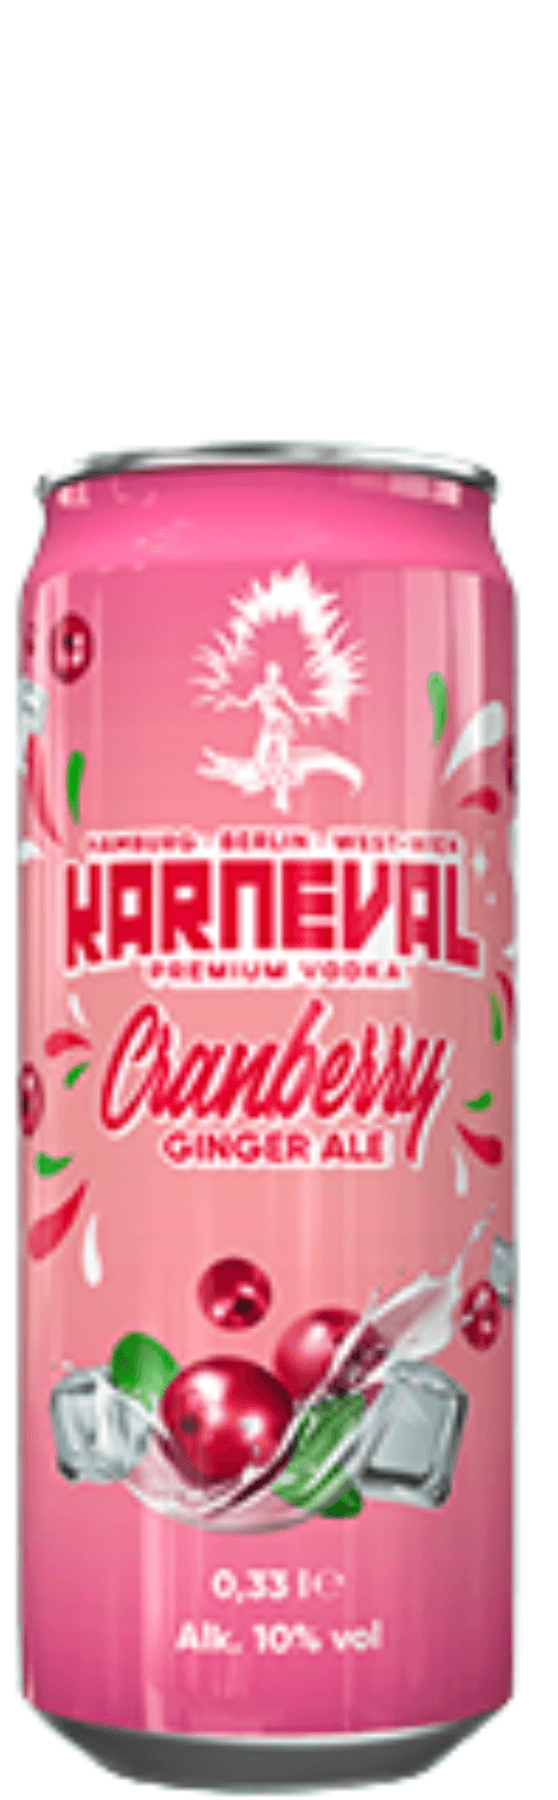 Karneval Vodka Cranberry Ginger Ale Mix 0,33 l Dose